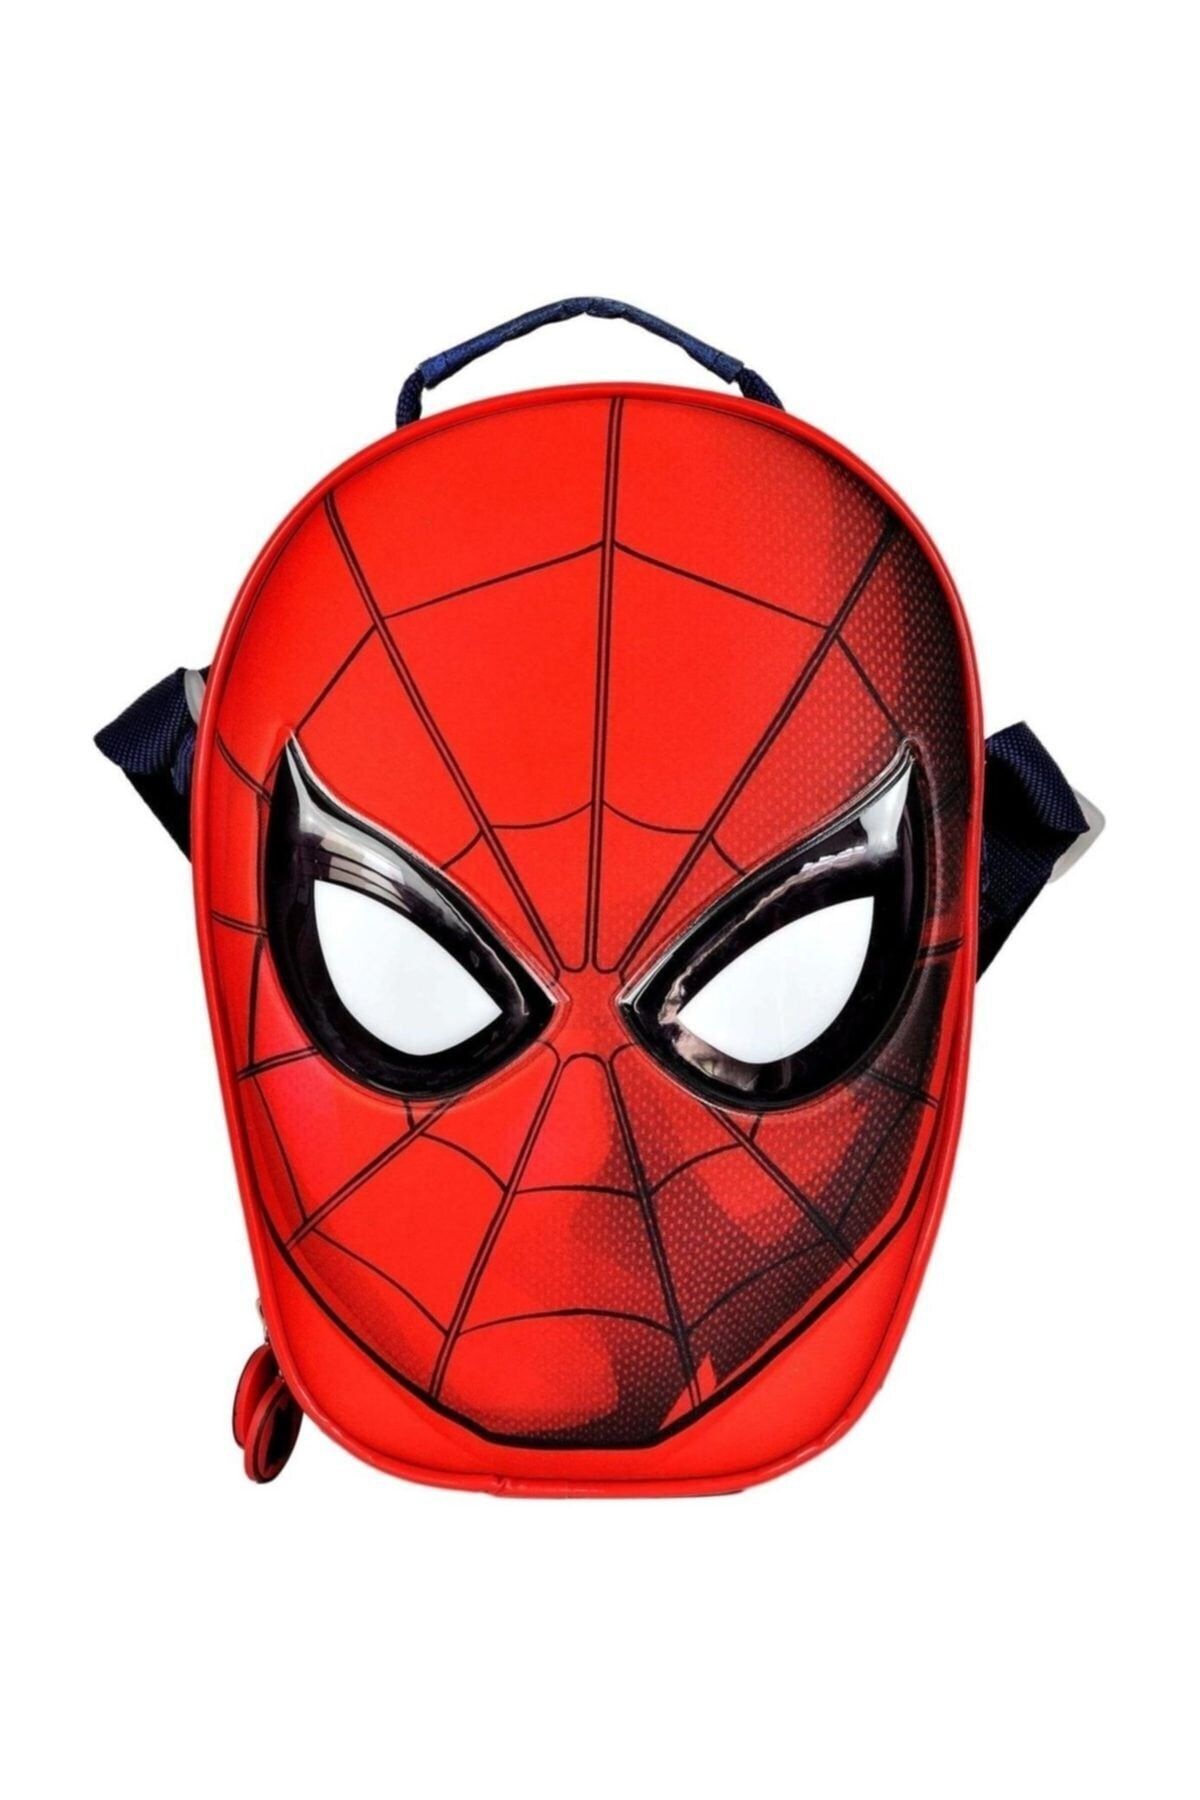 Hakan Çanta Spider Man 3d Anaokulu & Beslenme Çantası /